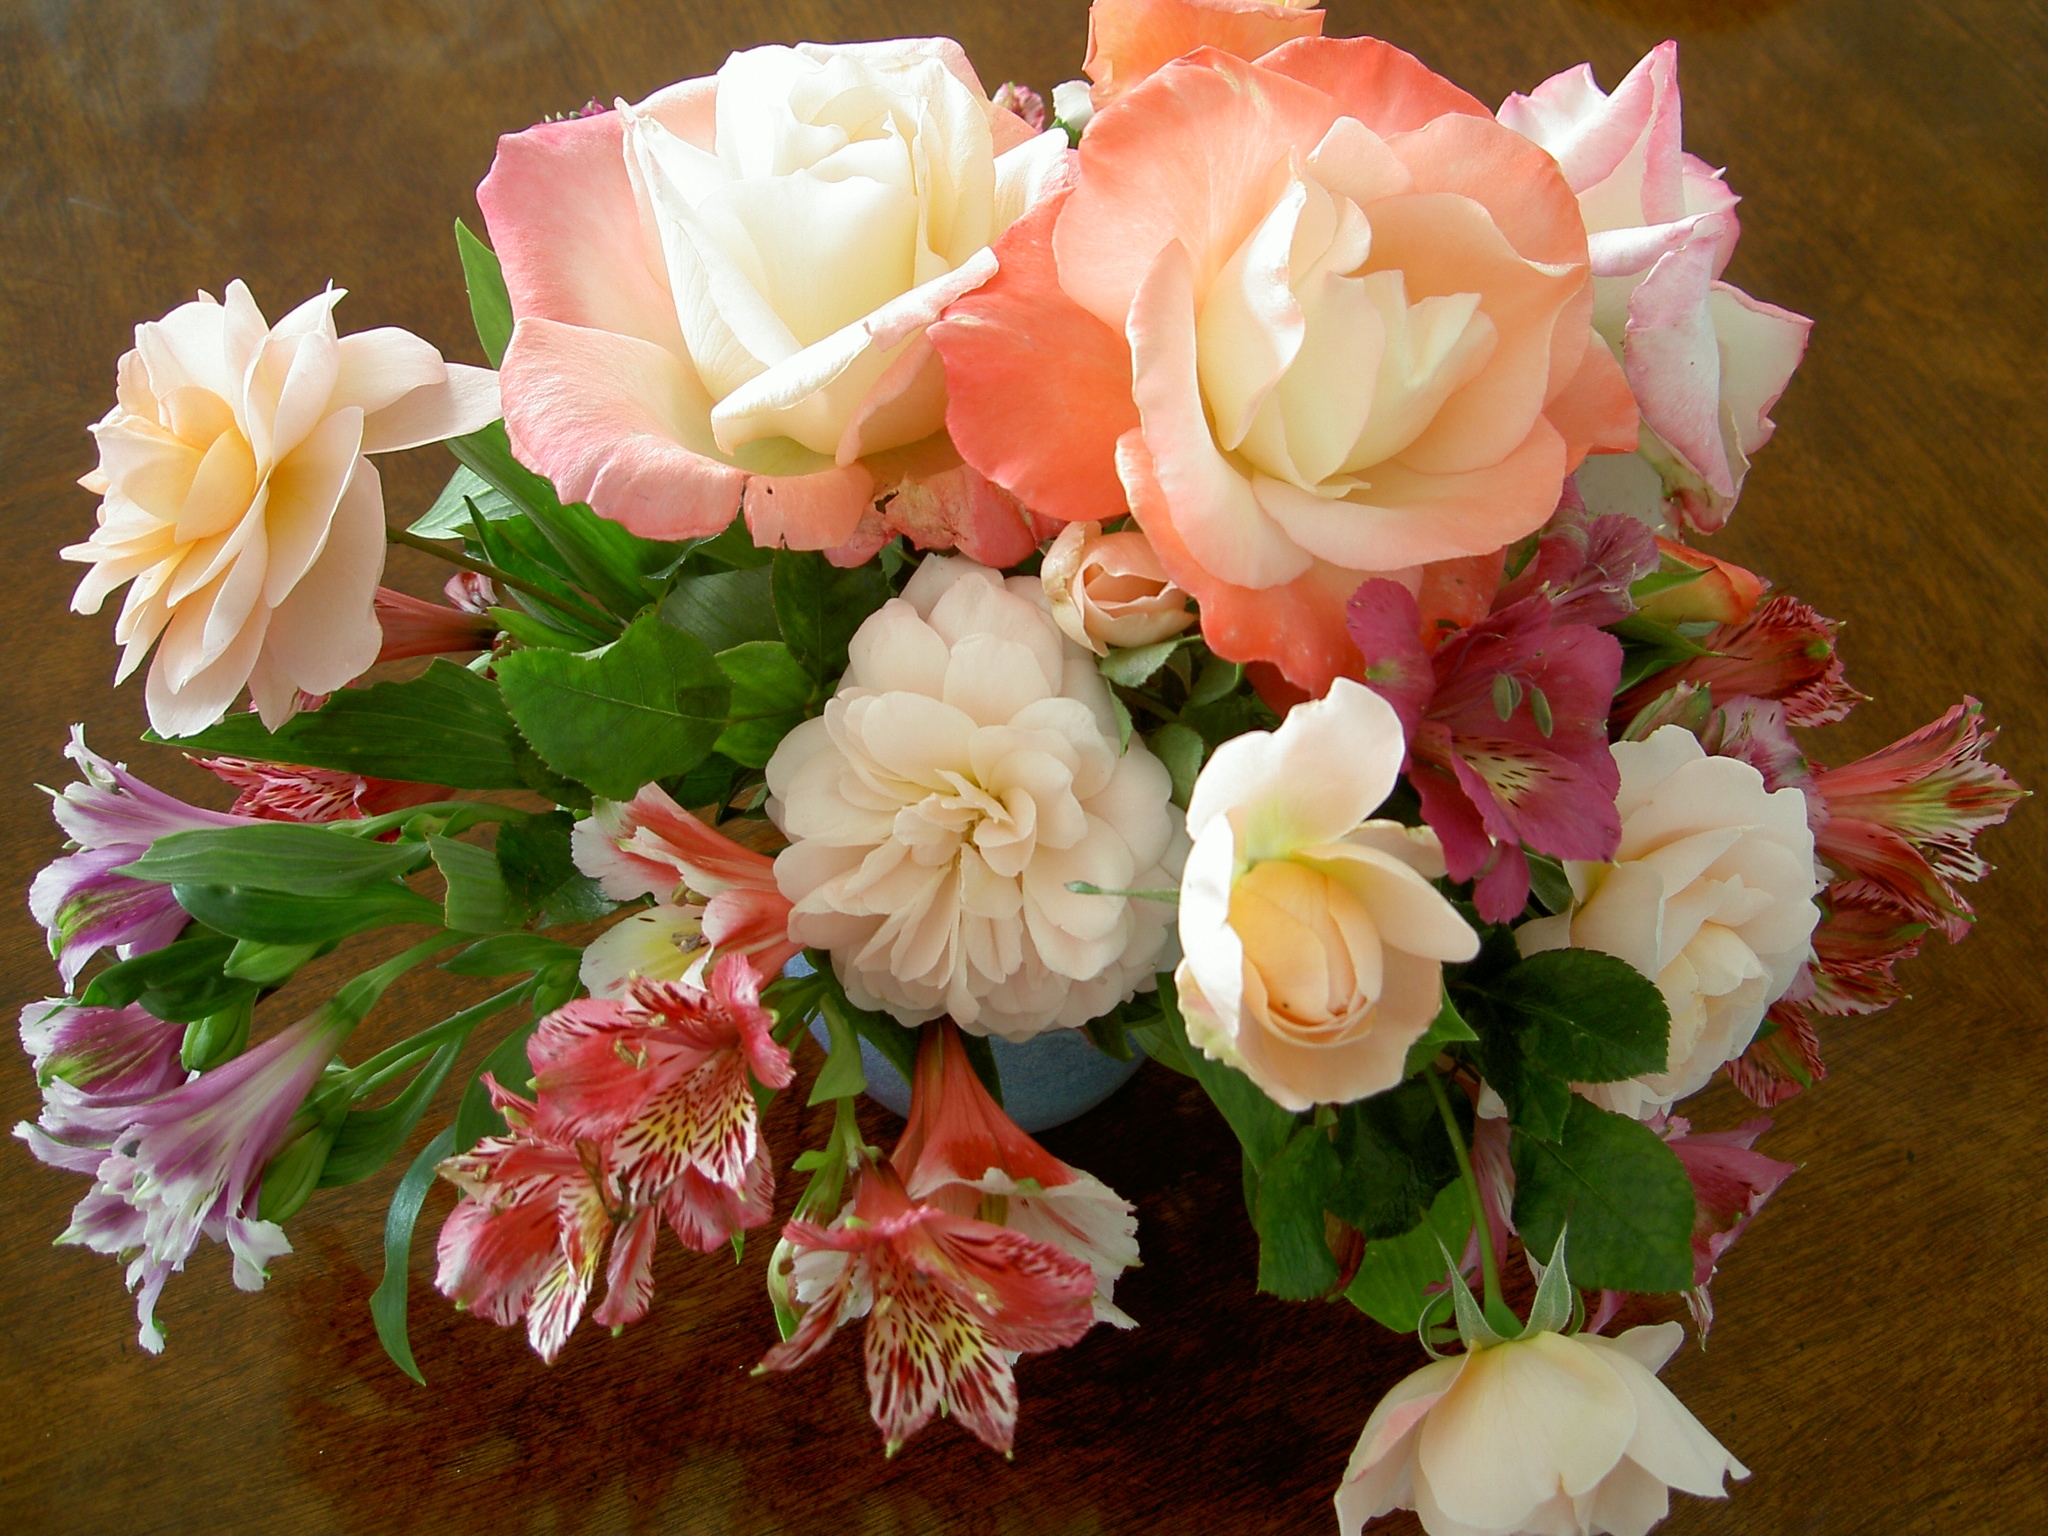 flowers, roses, lilies, bouquet, vase, composition